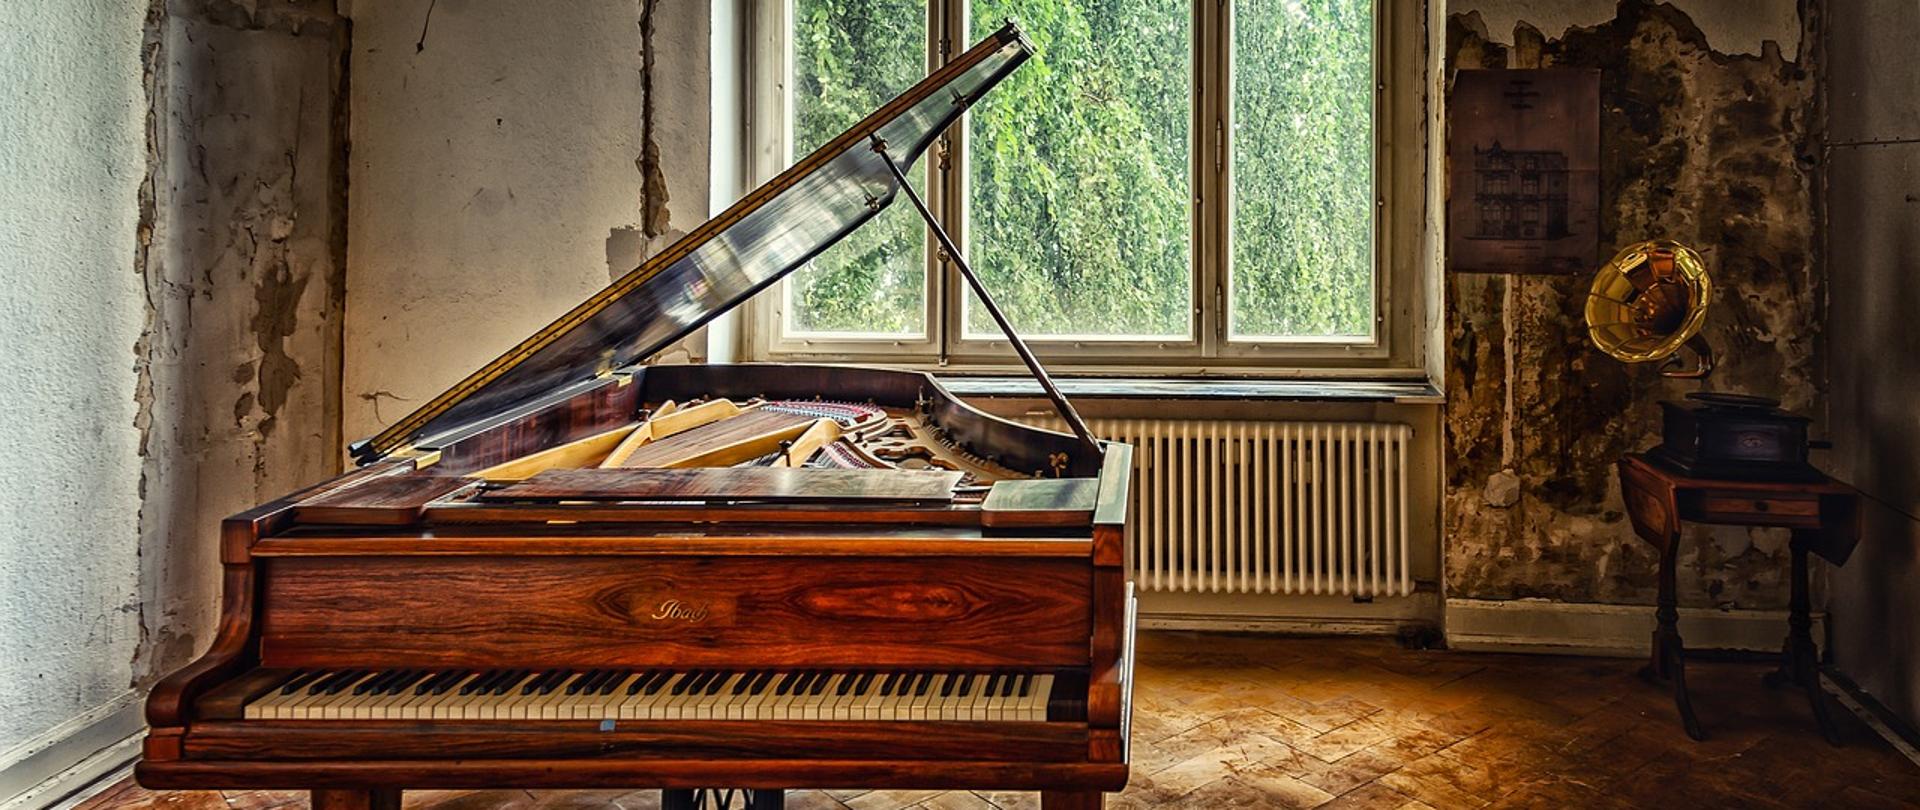 Zdjęcie : Obraz Peter H z Pixabay, retro obrazek przedstawiający otwarty fortepian w odrapanej z tynku sali , starej willi